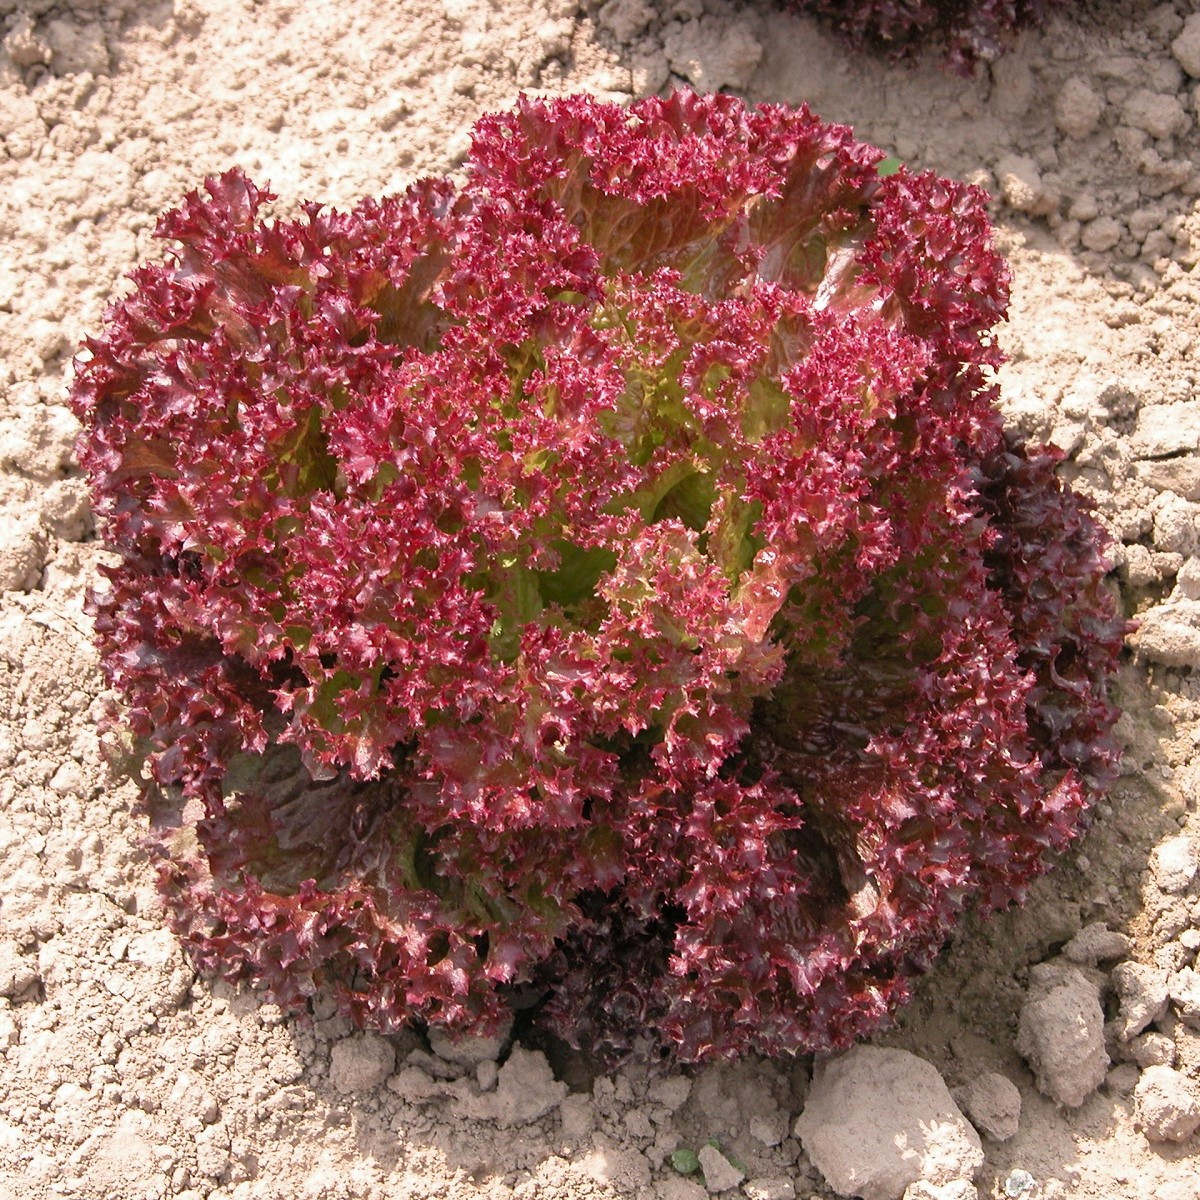 Salát listový Crimson - Lactuca sativa L. - semena salátu - 300 ks